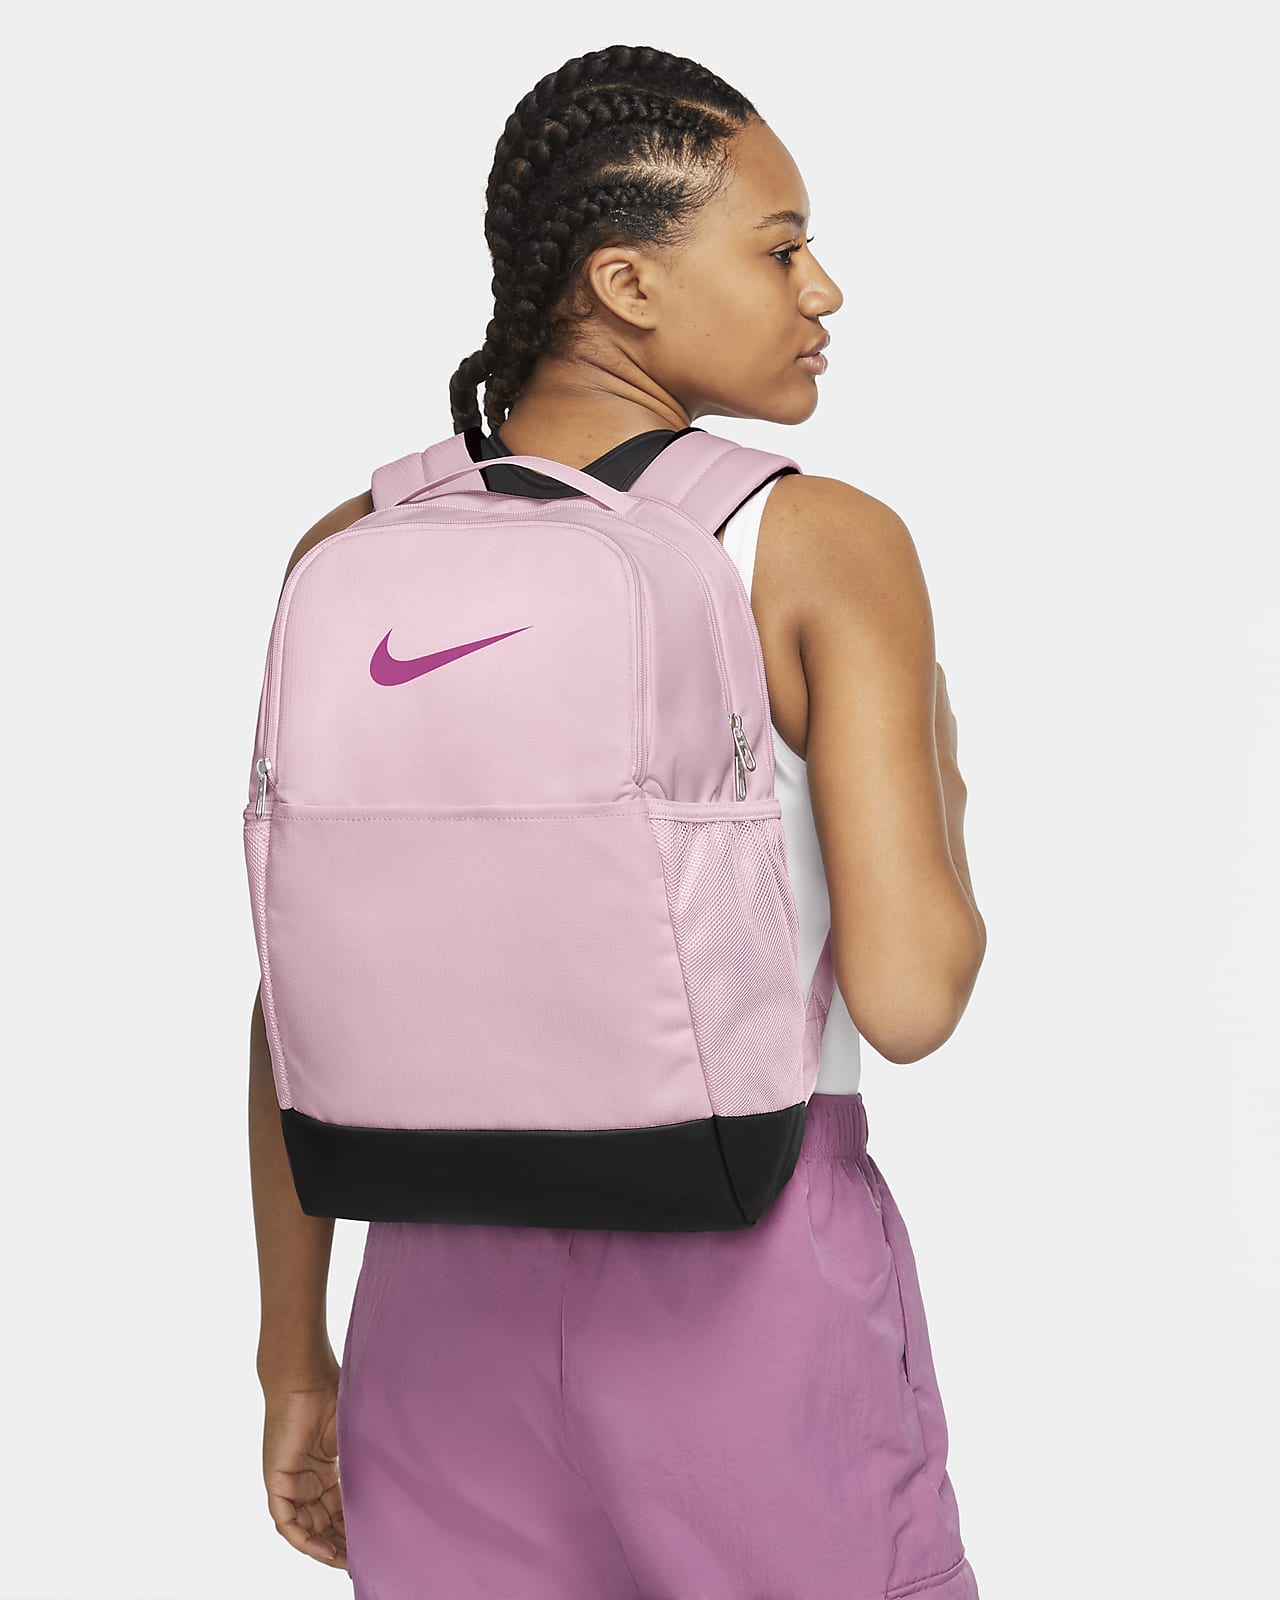 Nike Brasilia 9.5 Training Backpack (Medium,